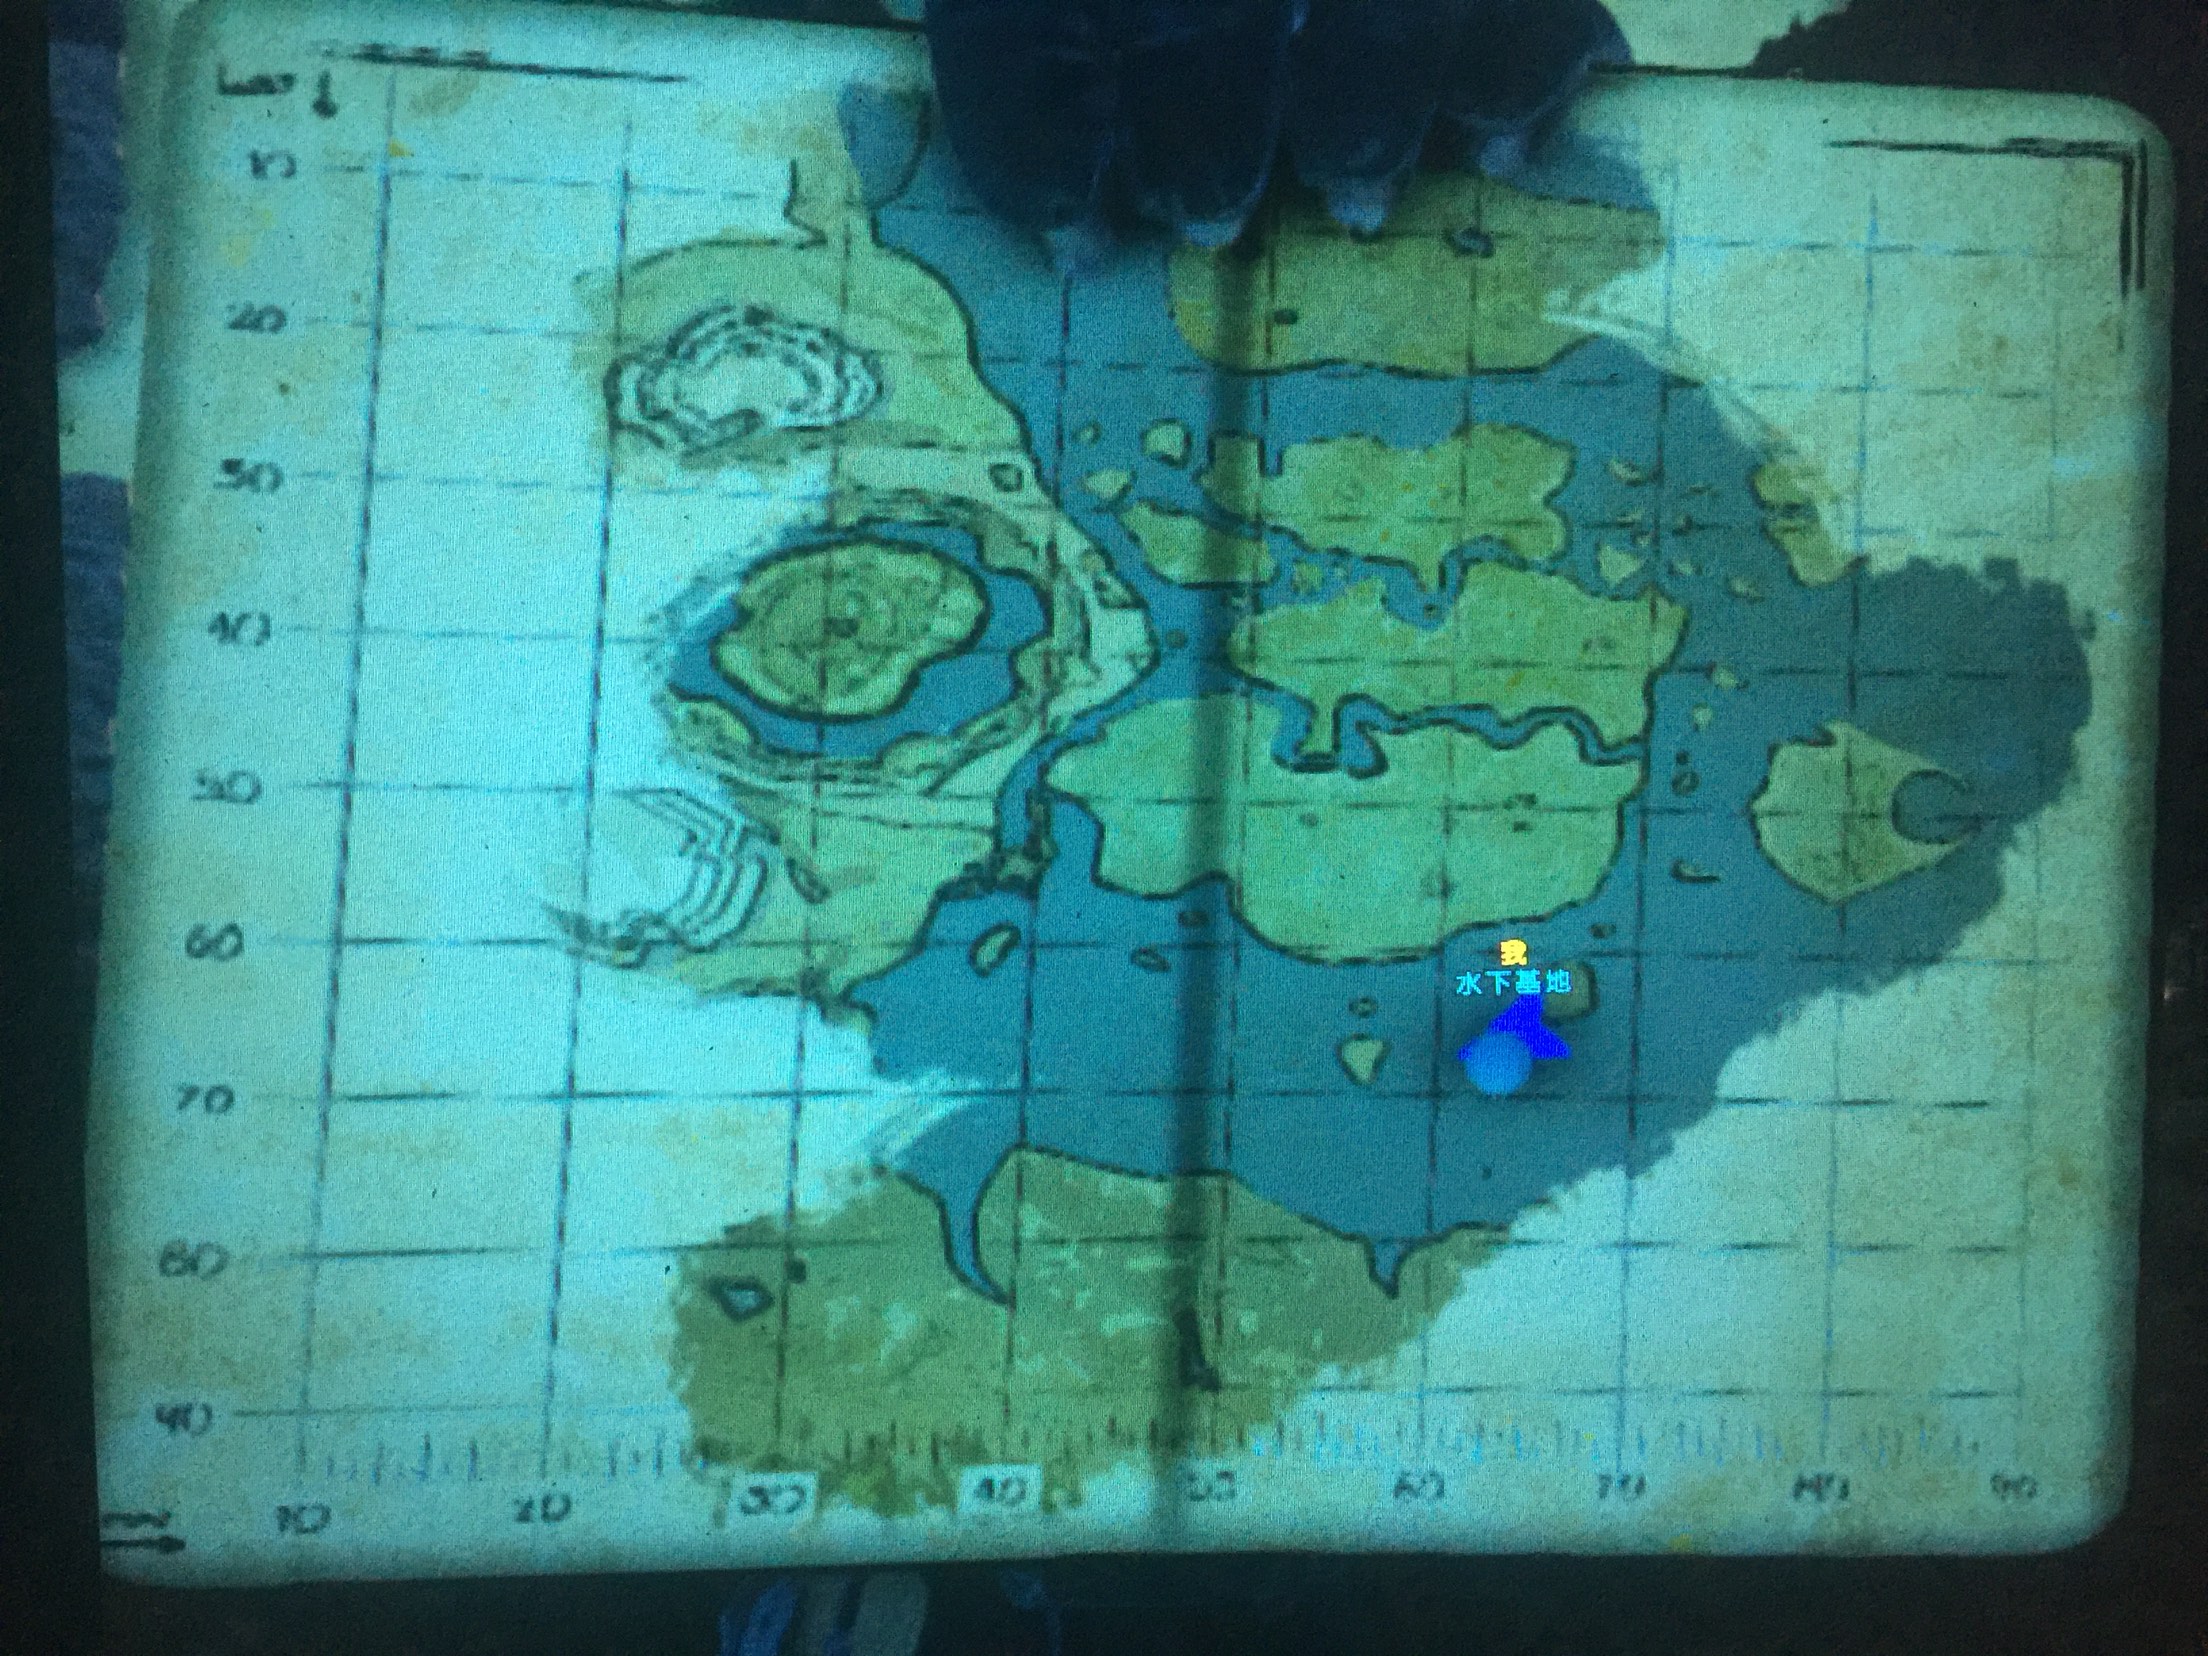 中心岛的水下基地 方舟作为一部优秀的沙盒游戏,它的地图也是非常广阔